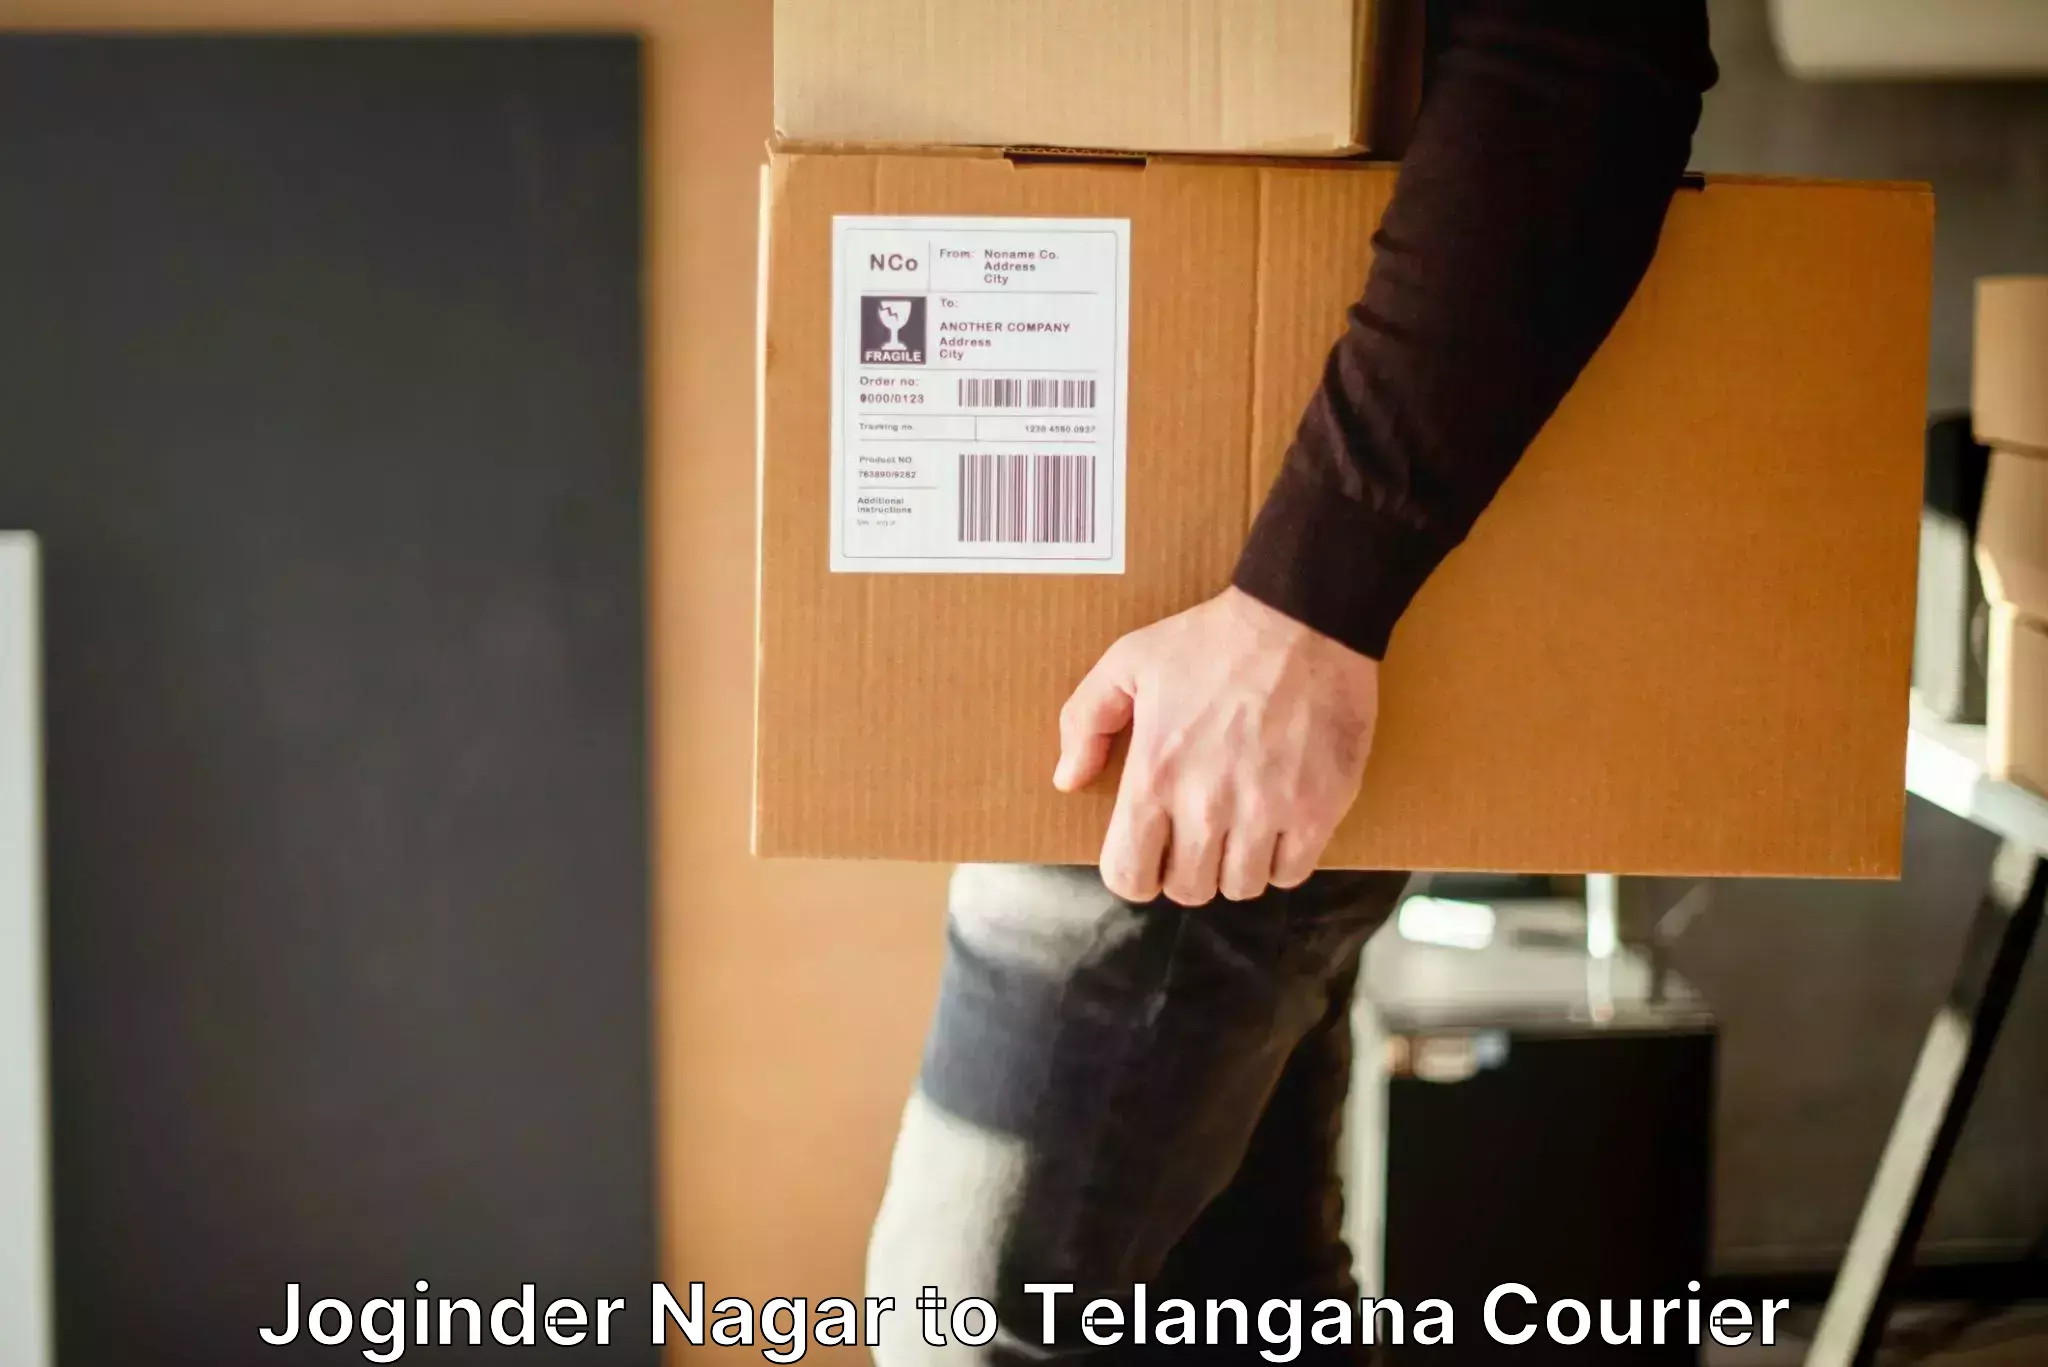 Global baggage shipping Joginder Nagar to Bejjanki